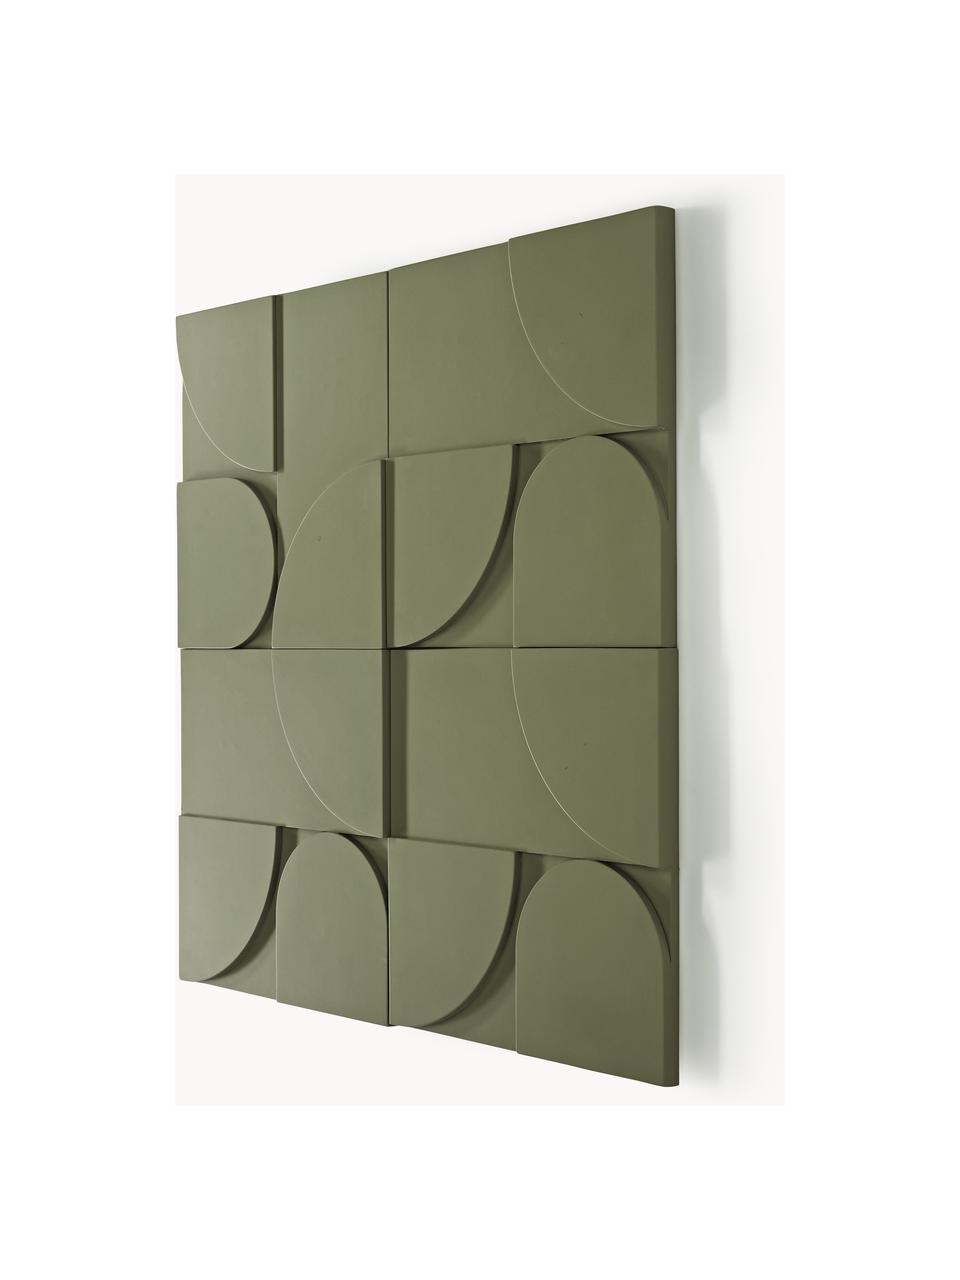 Sada nástěnných dekorací Massimo, 4 díly, MDF deska (dřevovláknitá deska střední hustoty), Olivově zelená, Š 80 cm, V 80 cm